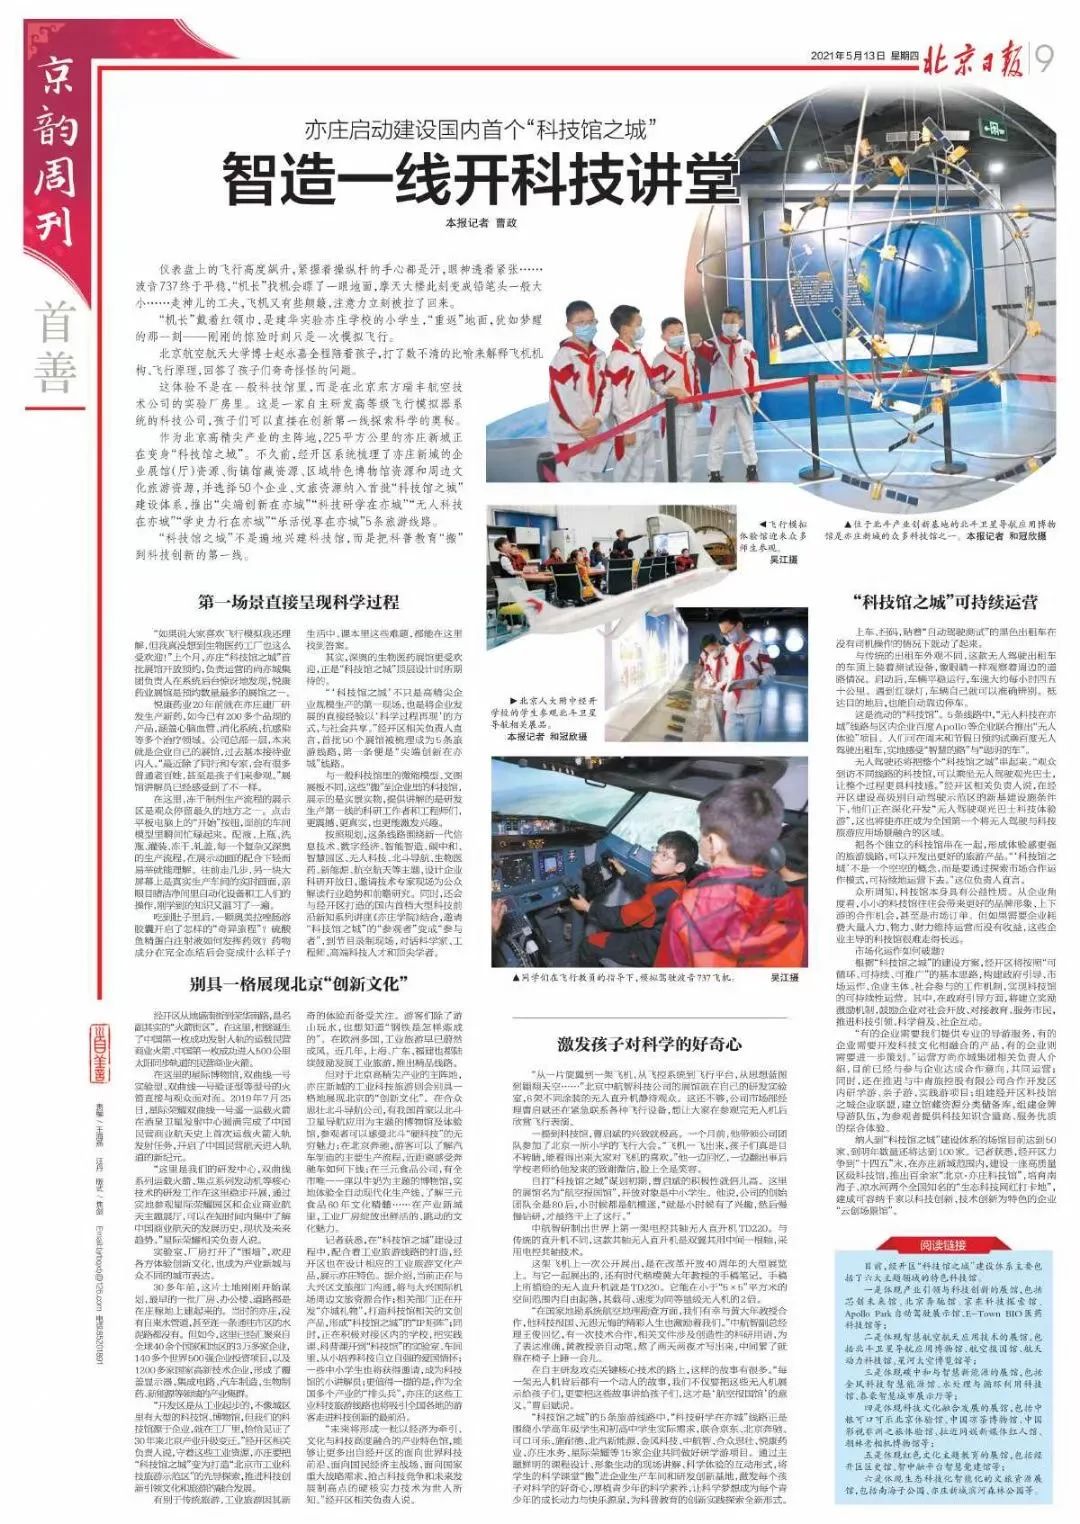 《北京日报》专版报道：北京经开区启动建设国内首个“科技馆之城